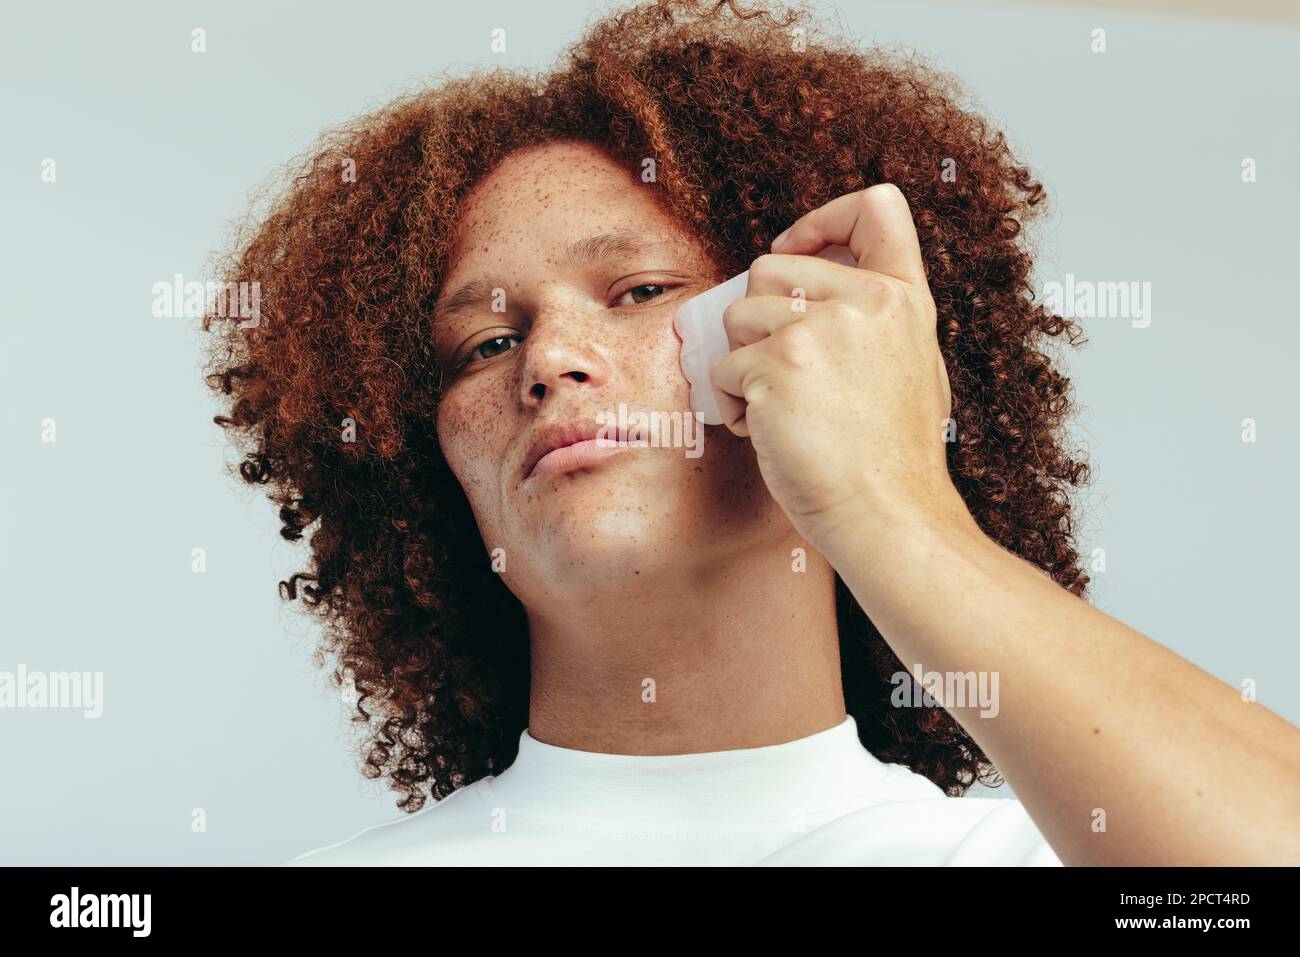 Giovane uomo che porta il suo grooming al livello seguente massaggiando il suo volto con una pietra di gua sha per ridurre la puffiness e migliorare il suo aspetto. Uomo con fr Foto Stock